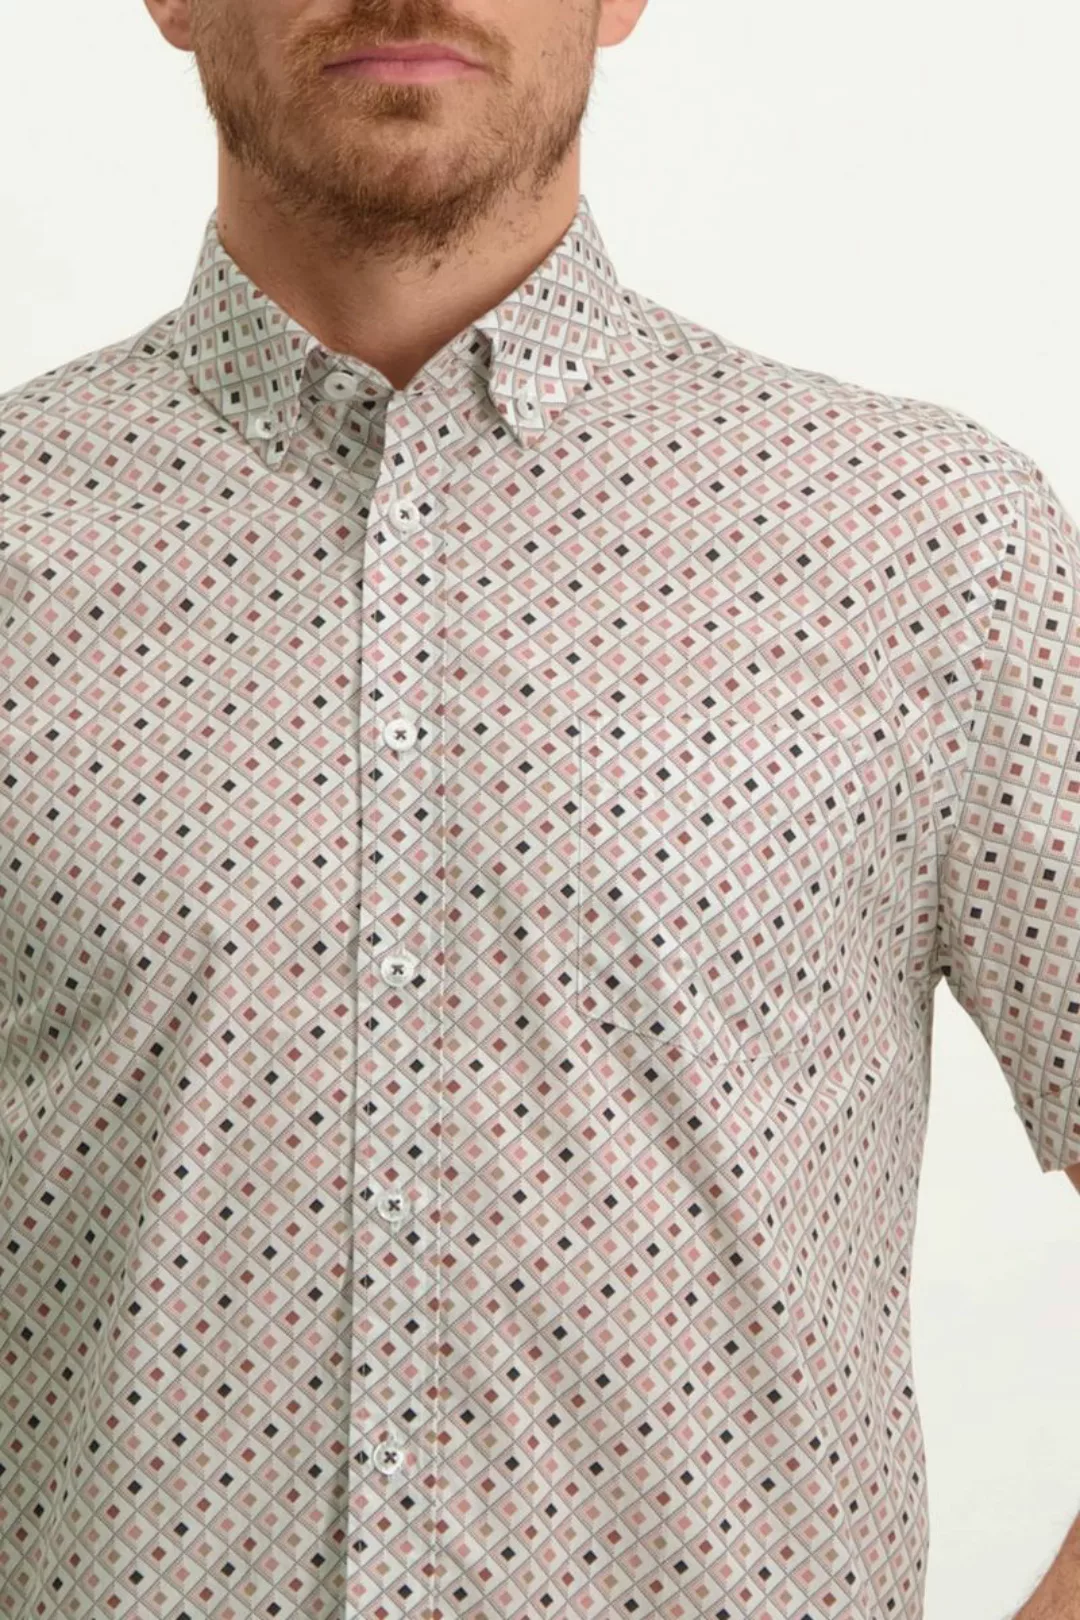 State Of Art Short Sleeve Hemd Druck Rosa - Größe M günstig online kaufen